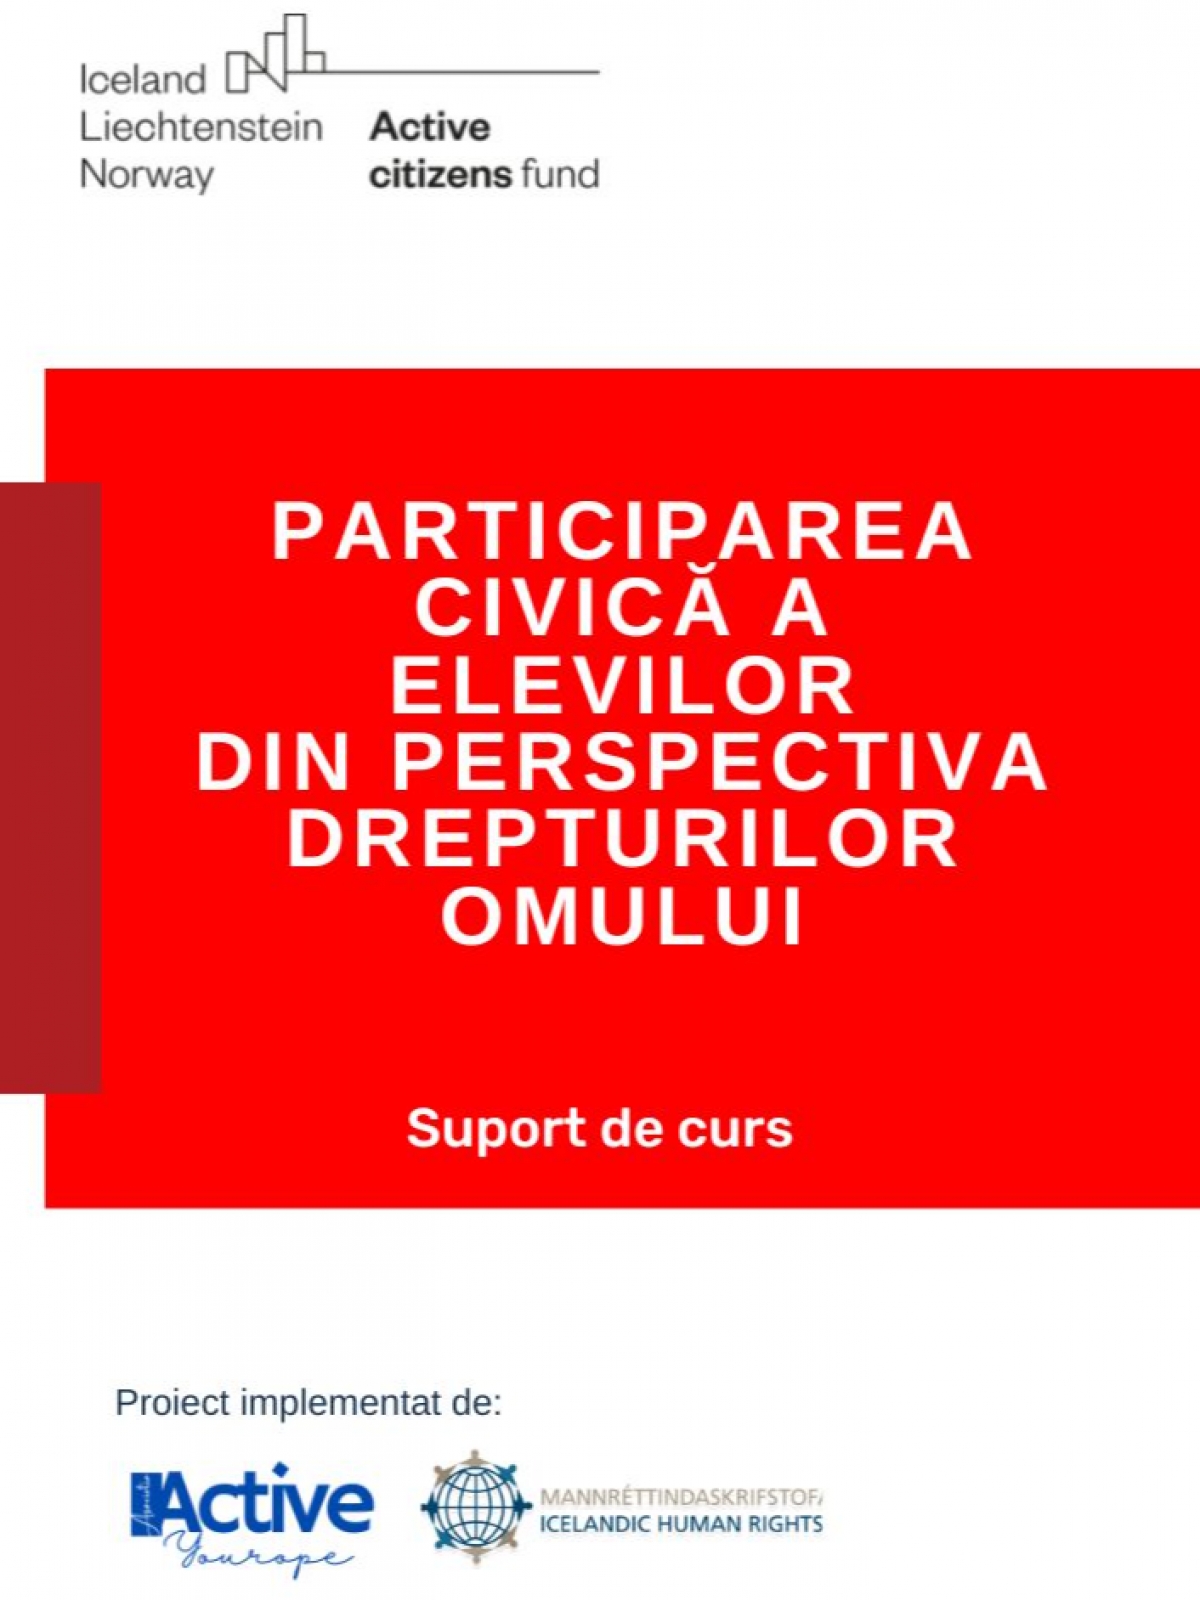 Participarea civica a elevilor din perspectiva dreprurilor omului
